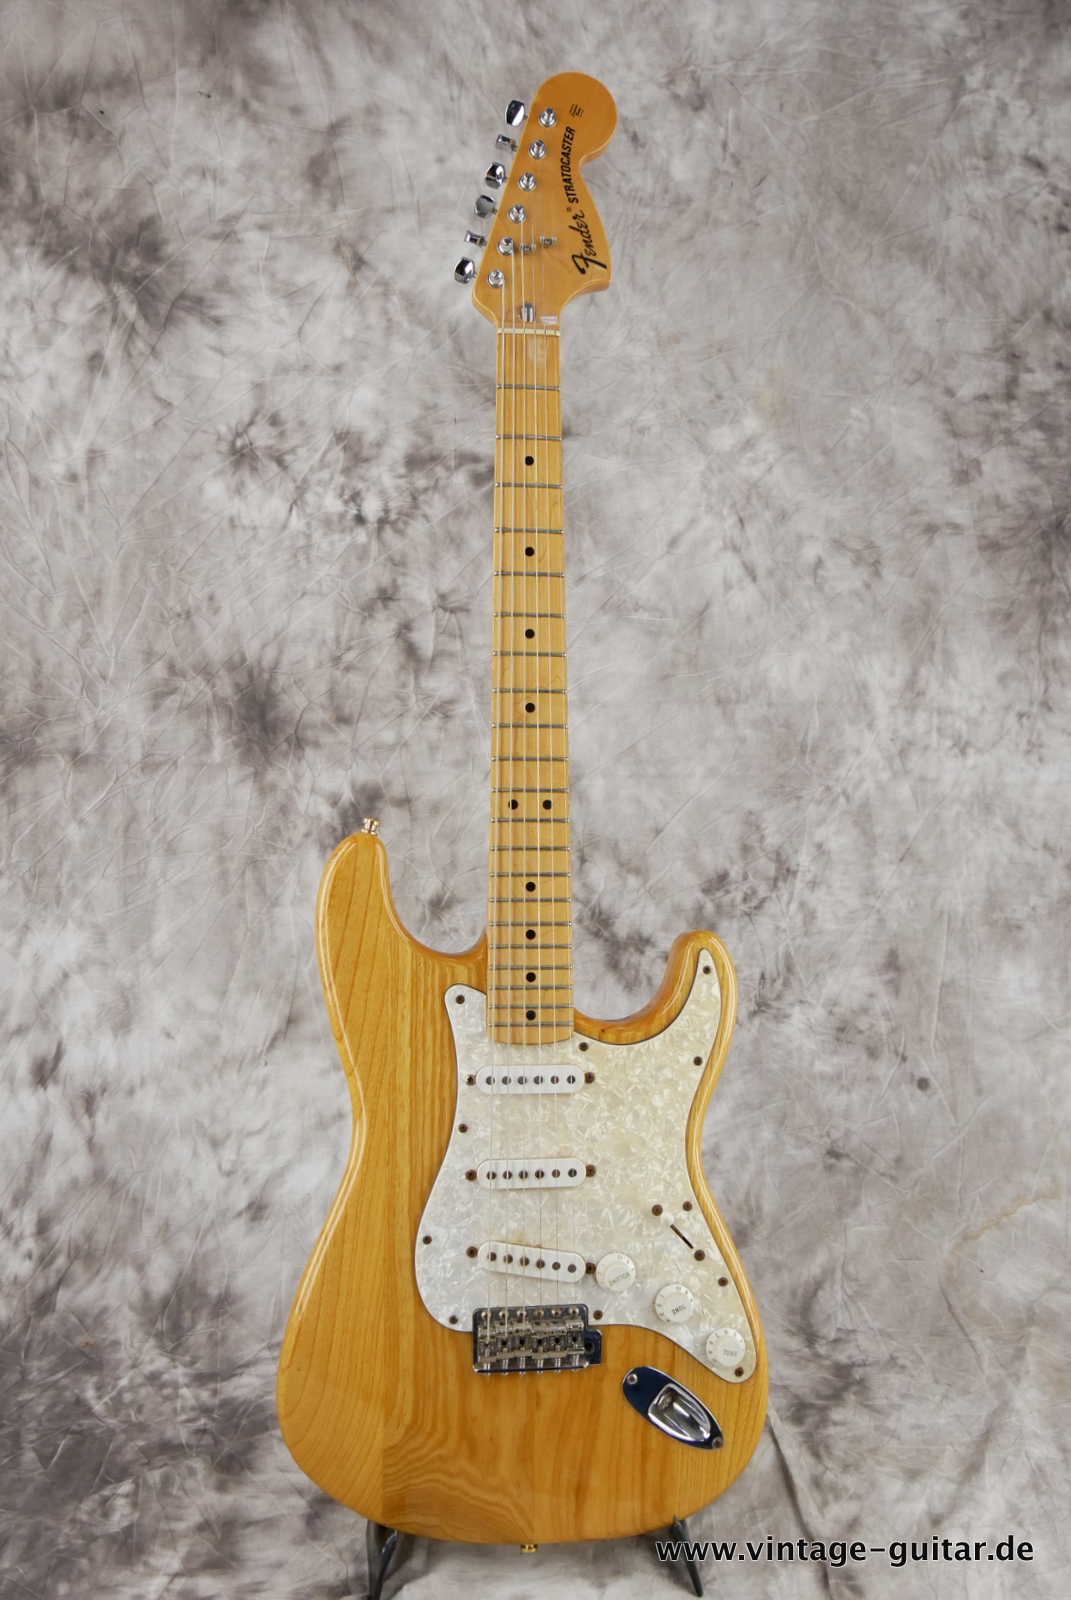 Fender_Stratocaster_70s_reissue_maple_neck_1999_Mexico-001.JPG